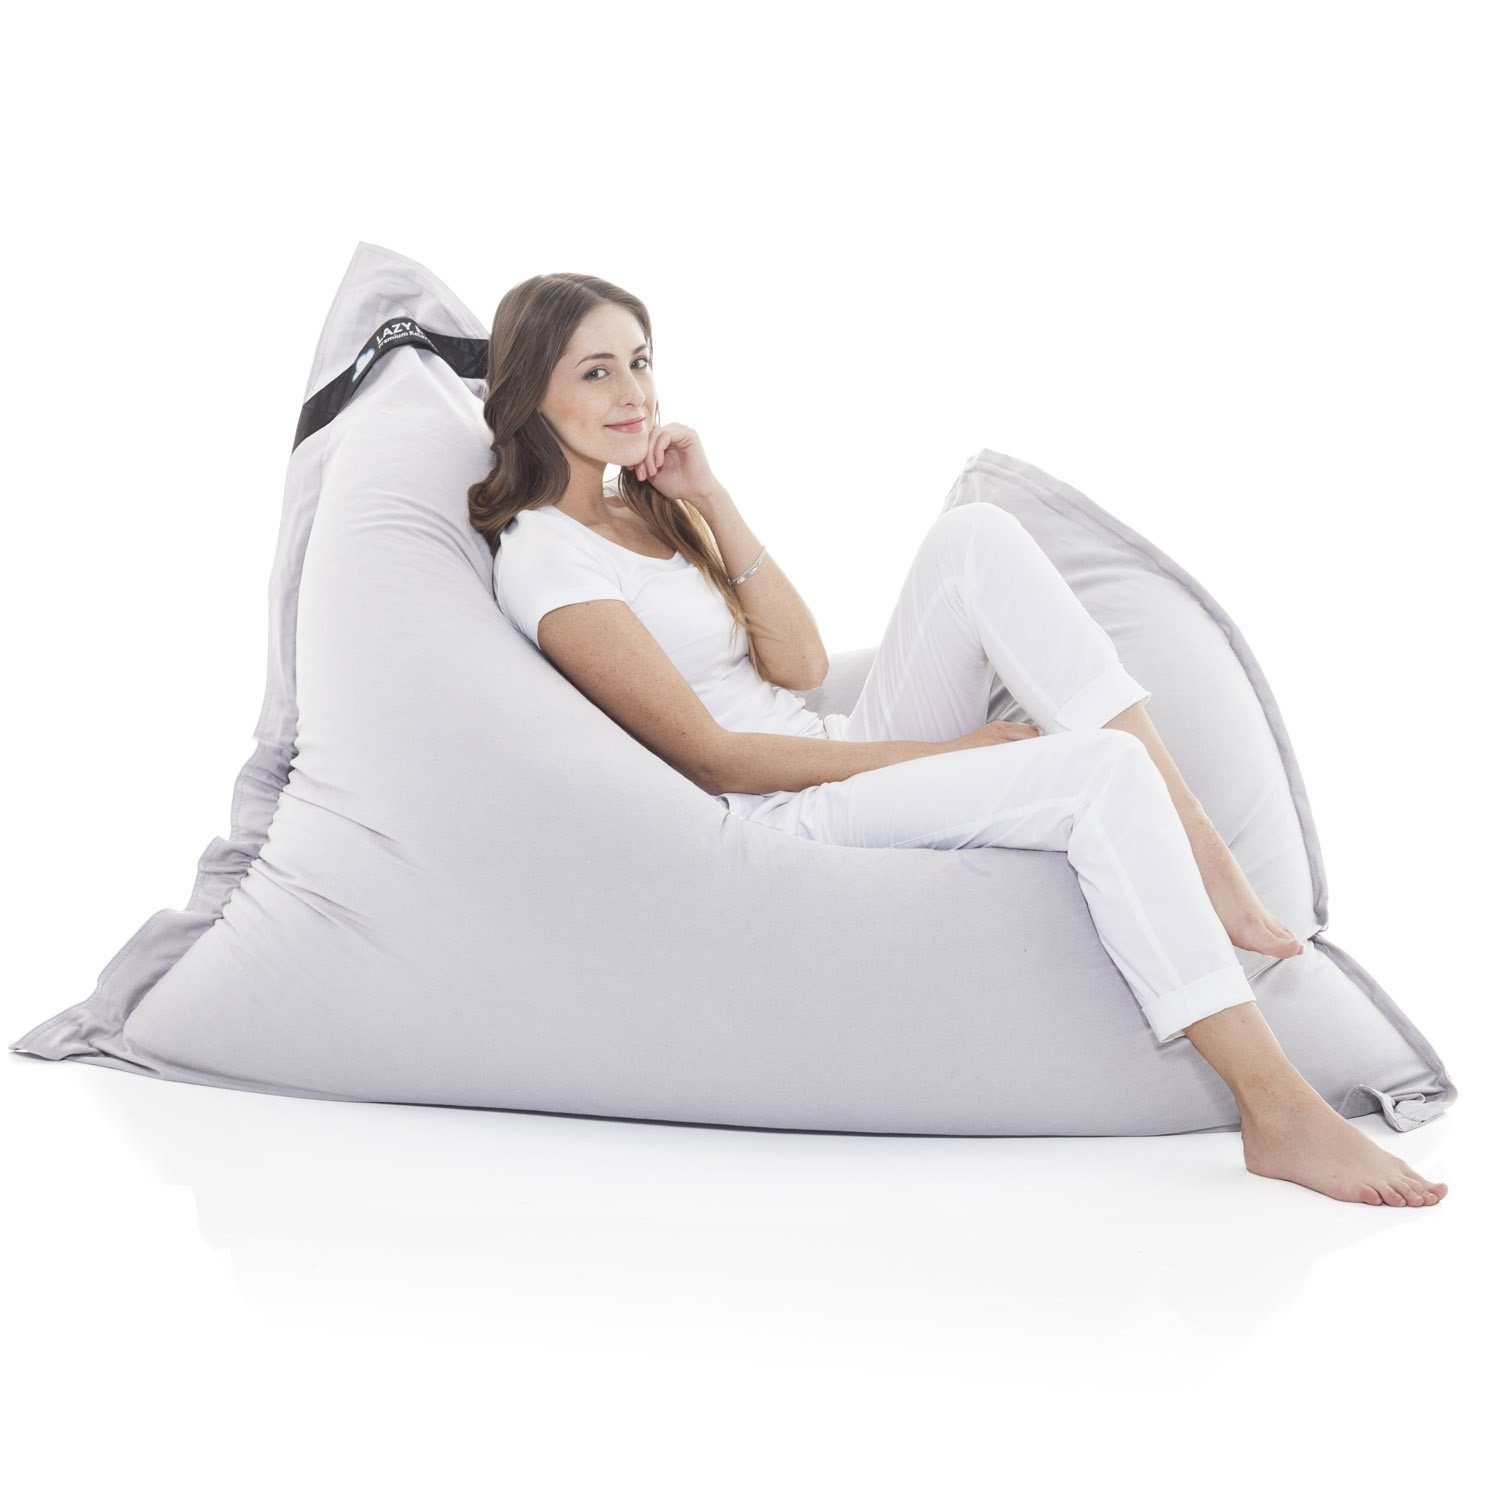 LazyBag Sitzsack »Indoor XXL Riesensitzsack« (Sitzkissen Bean-Bag,  Baumwolle Bezug), 180 x 140 cm online kaufen | OTTO